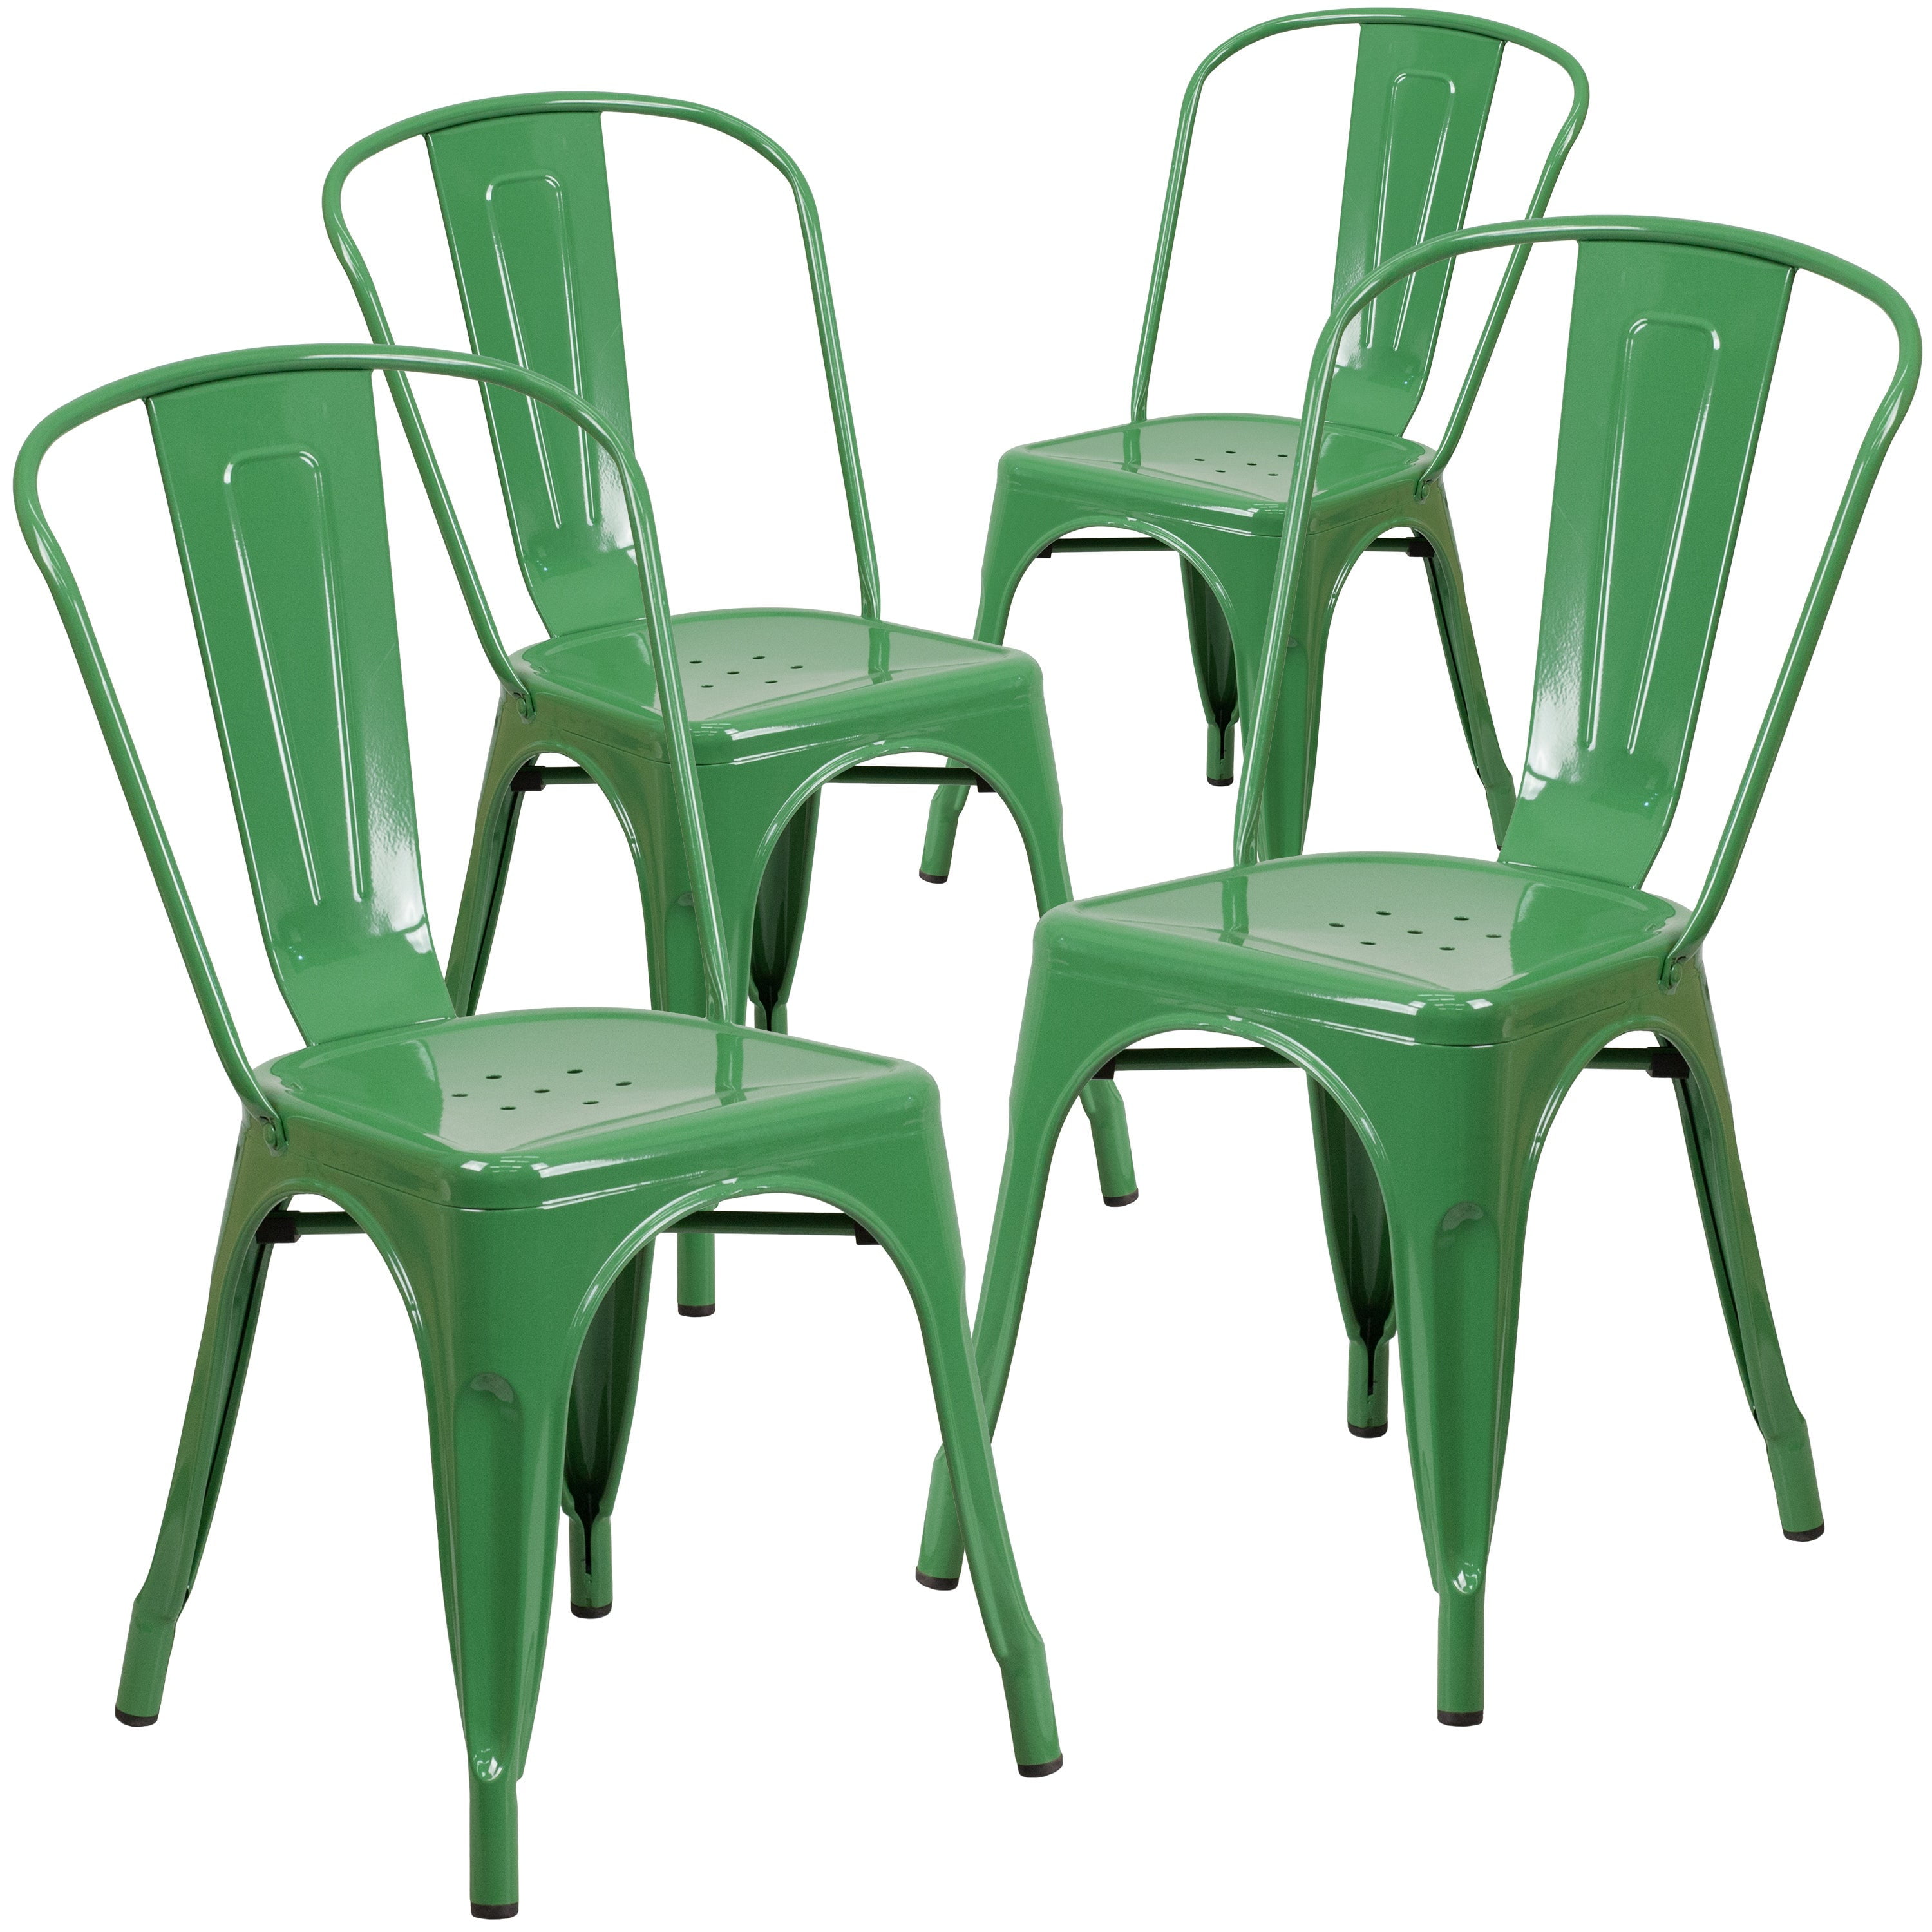 Yellow Metal Indoor-Outdoor Stackable Chair Flash Furniture 4 Pk 